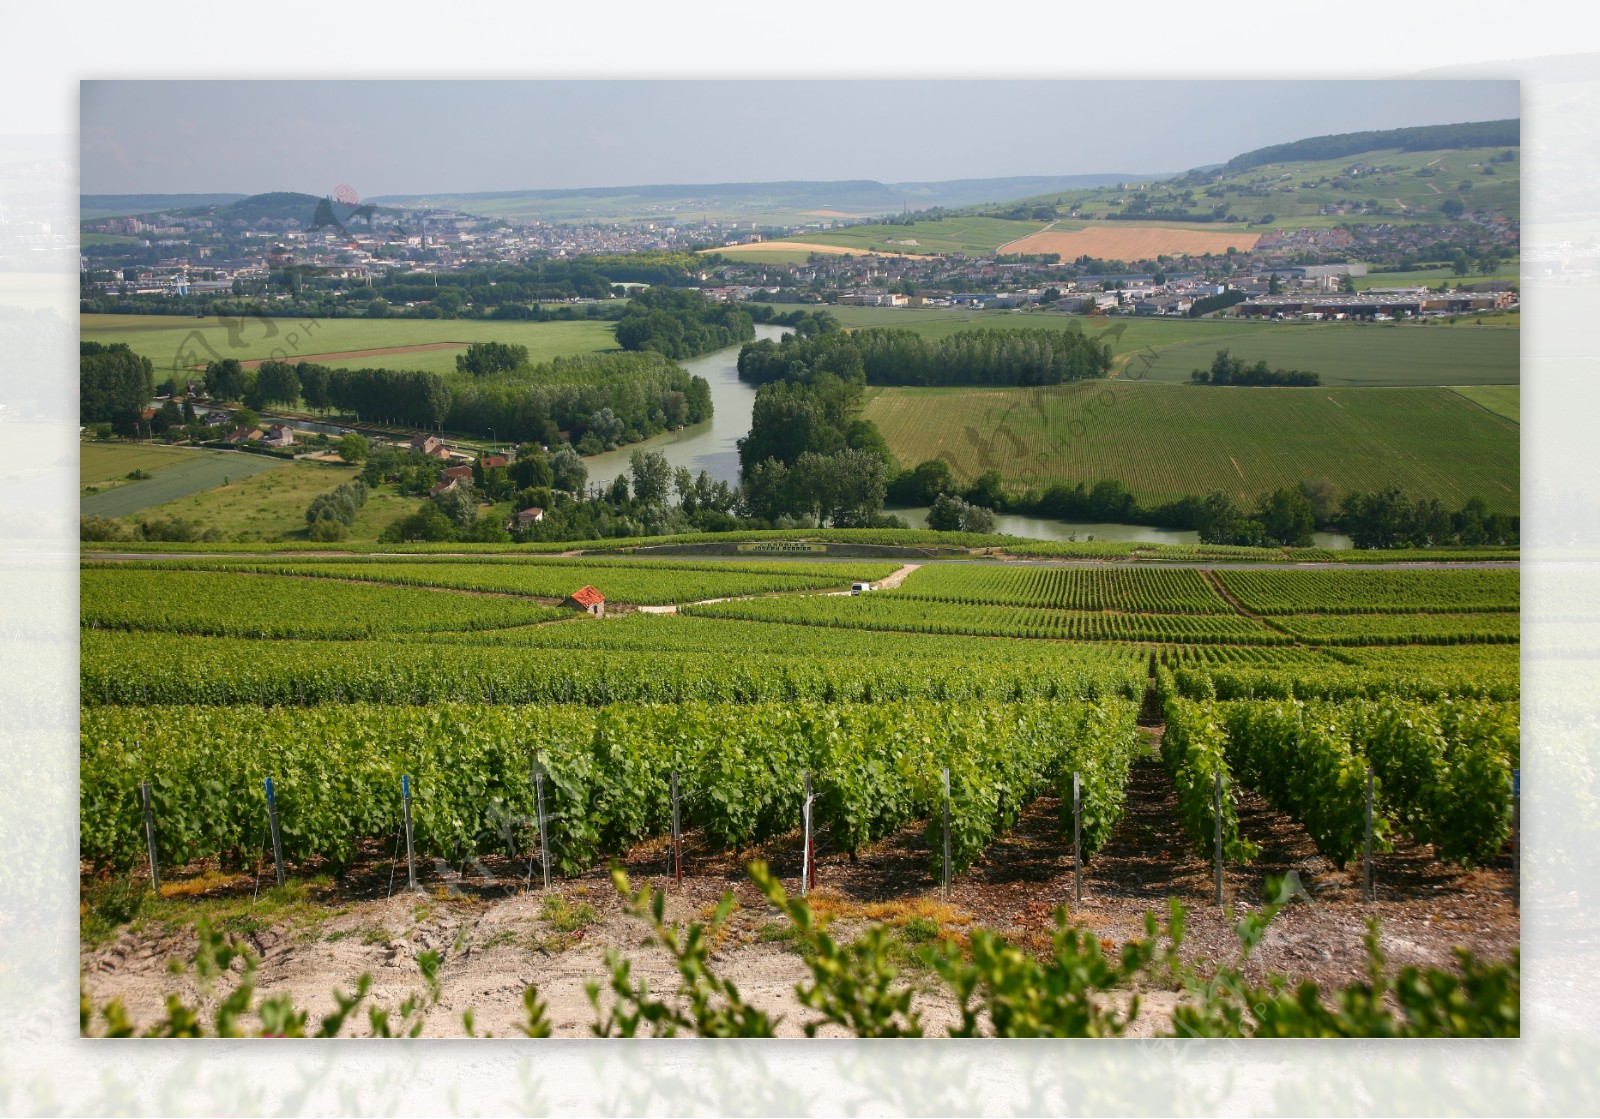 法国葡萄园图片